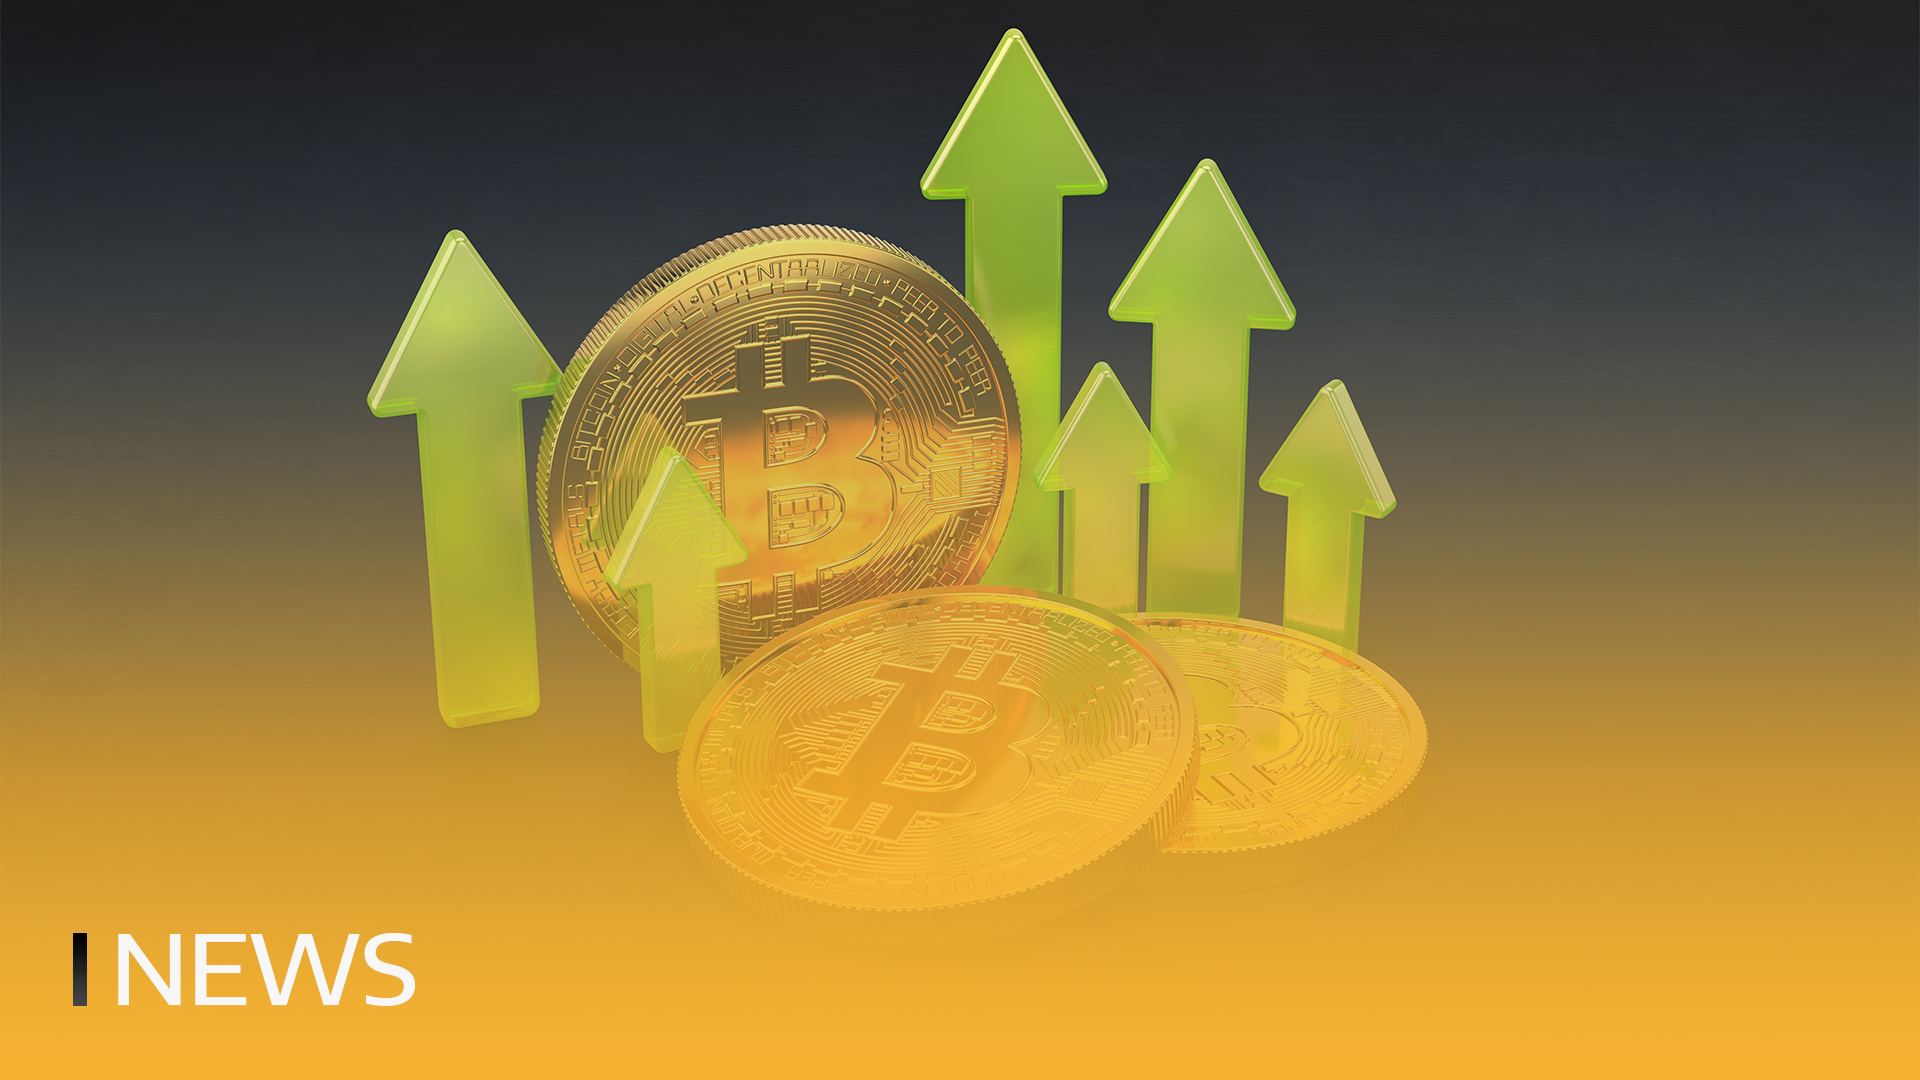 Analýza naznačuje, že nyní je nejlepší čas na nákup bitcoinu